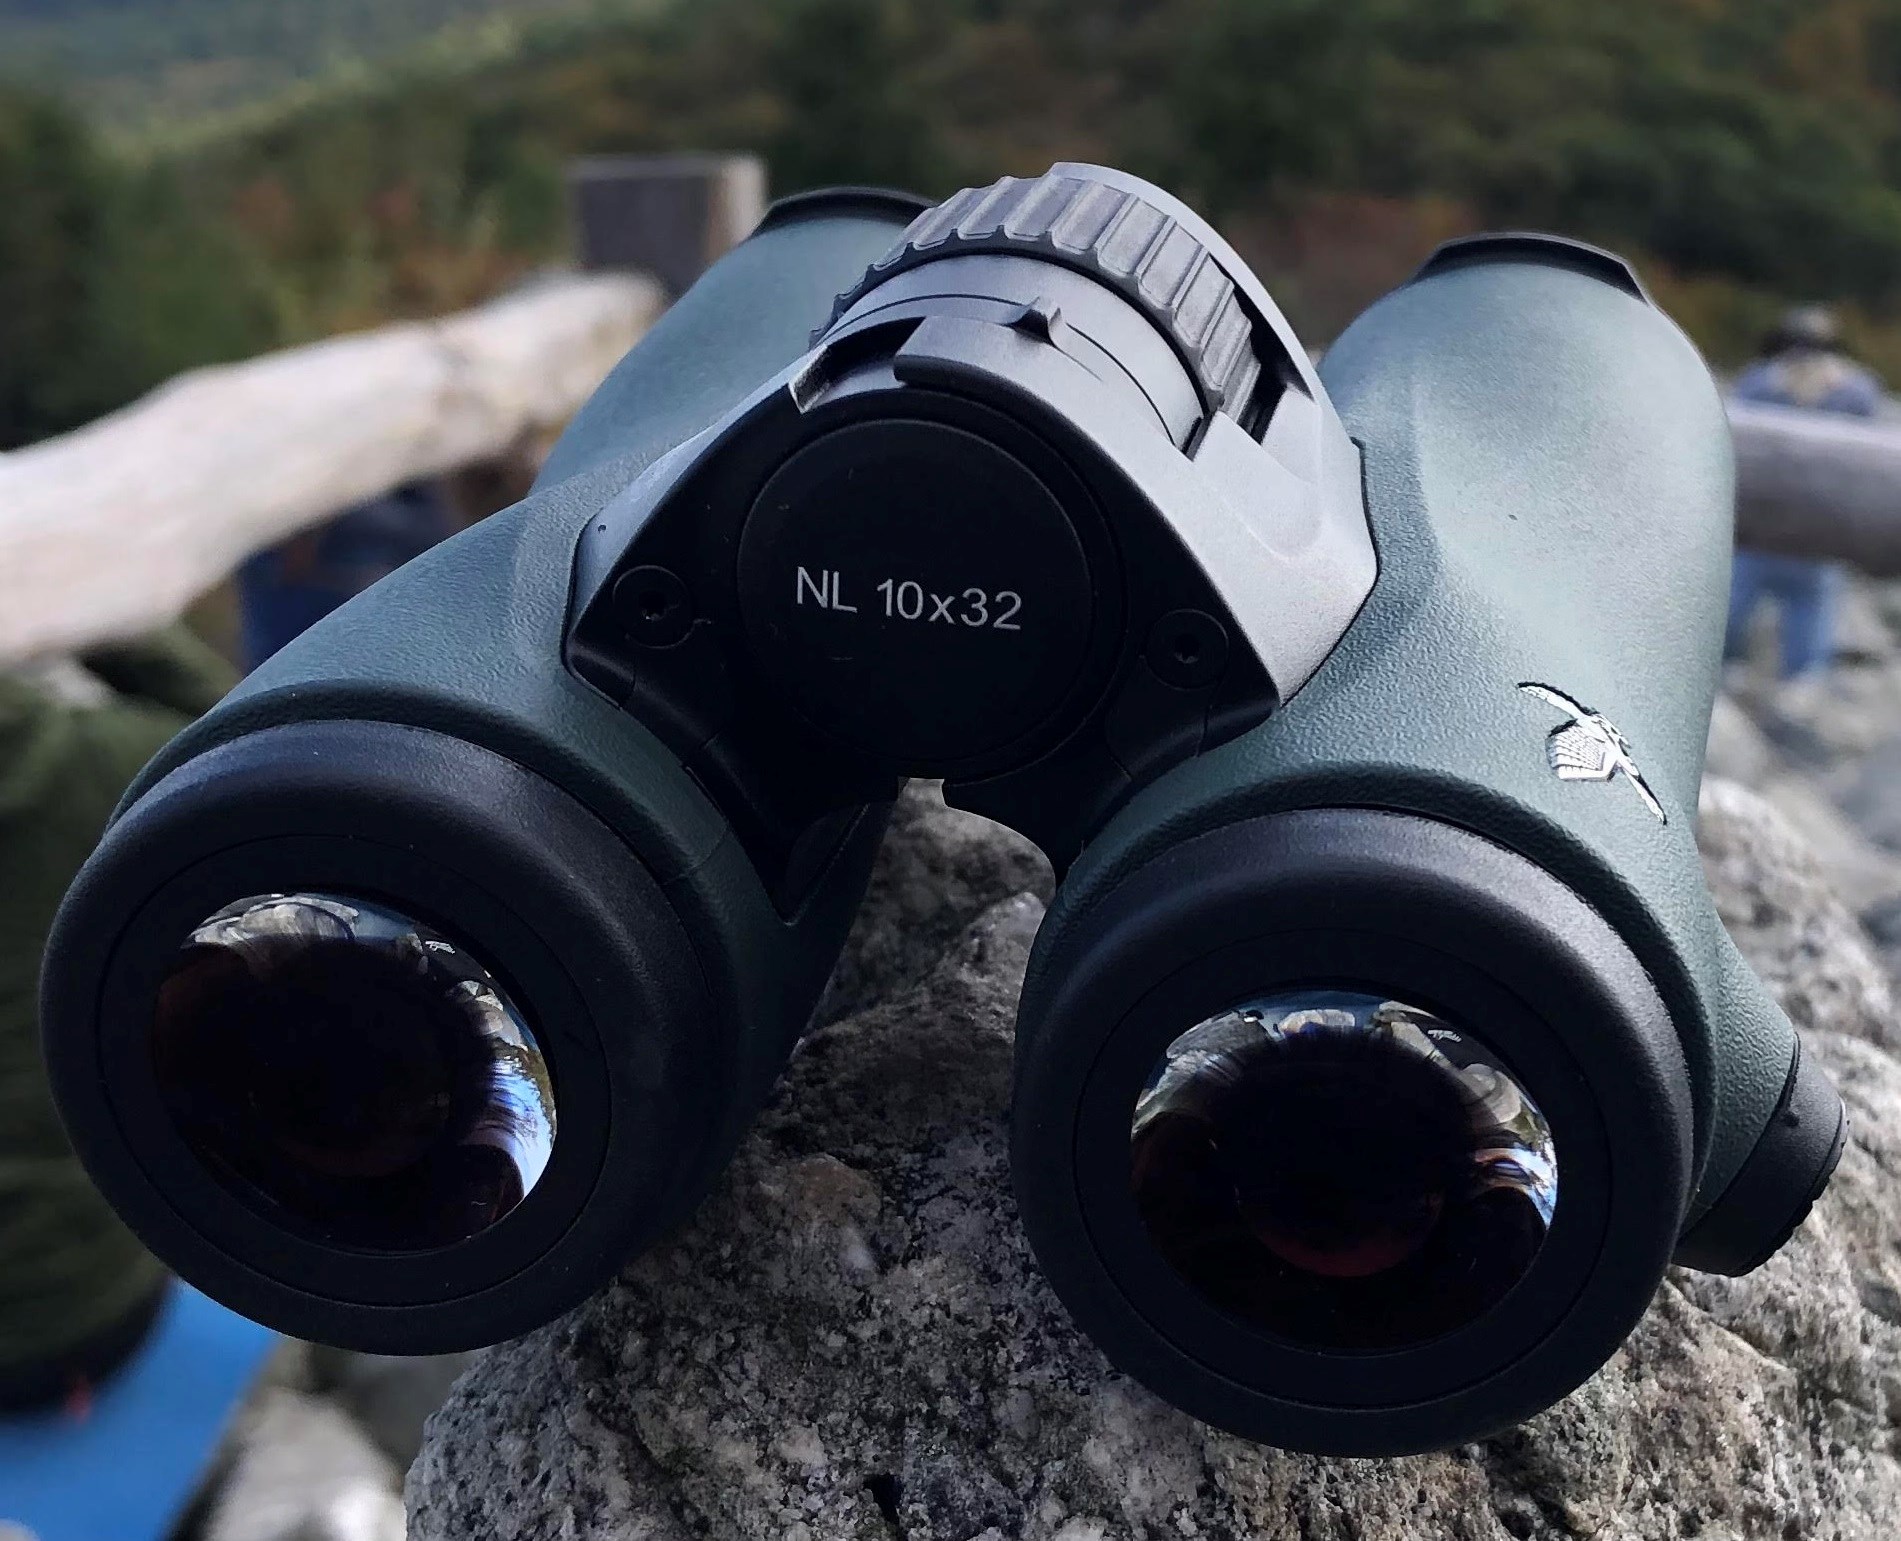 Swarovski Binoculars NL 10x32